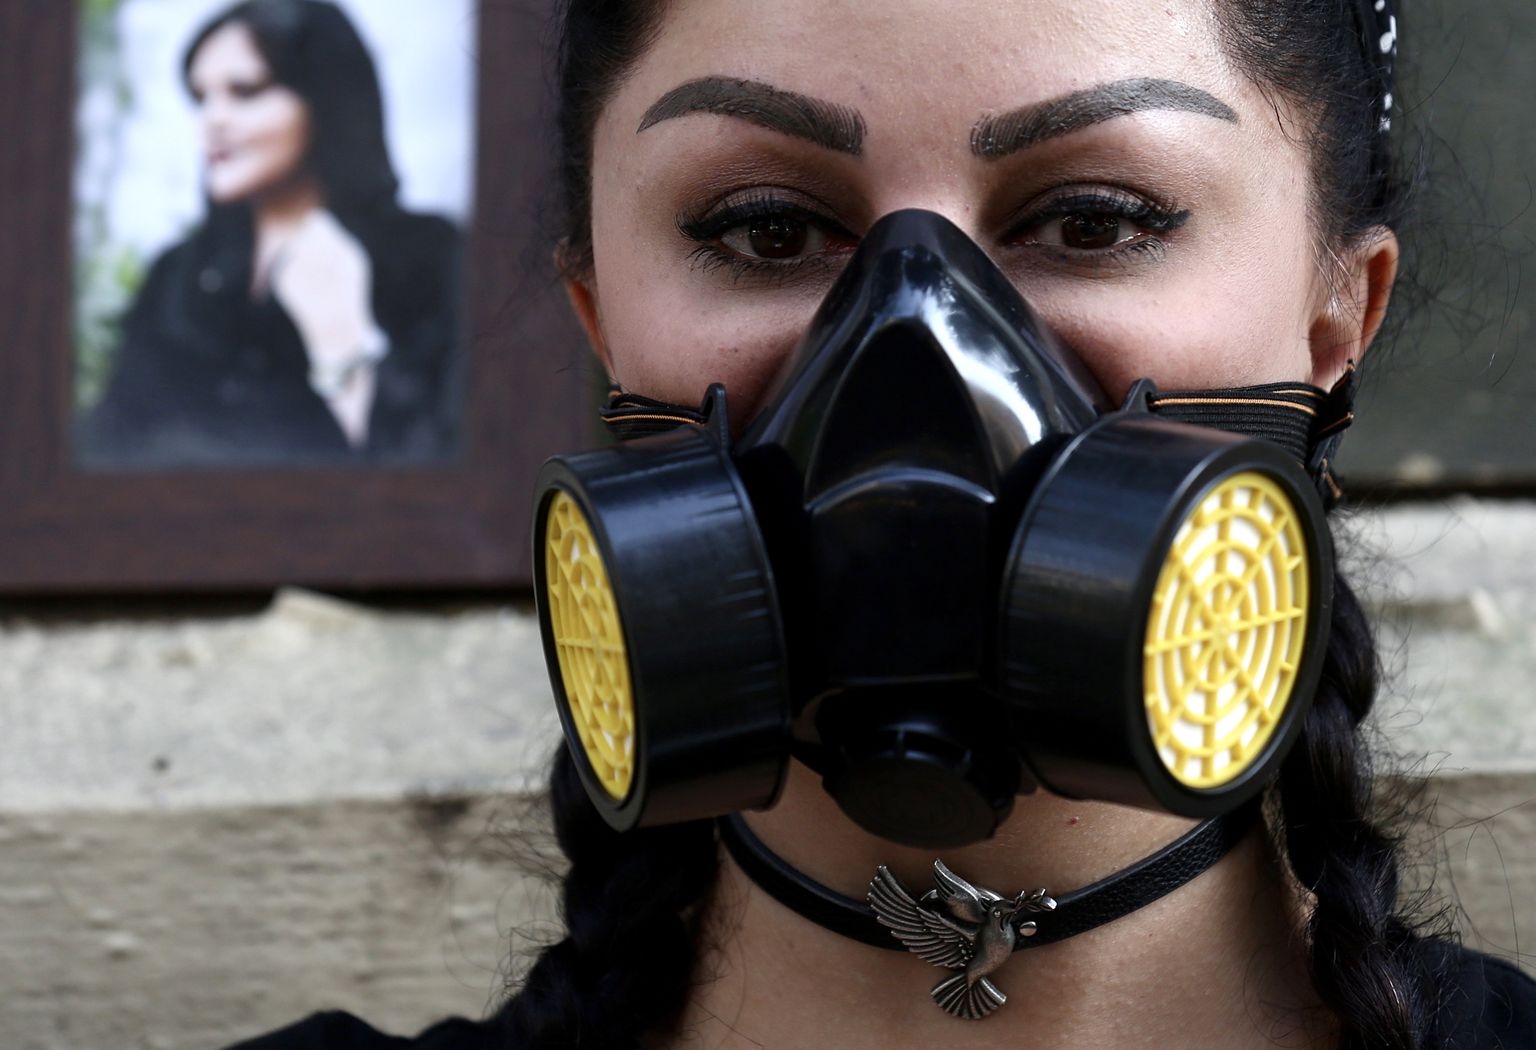 Iraanist pärit psühholoogiaüliõpilane Nikoo Azad kannab 5. märtsil Indias Bangalores toimunud protesti ajal keemilise gaasi eest kaitsvat maski. Nikoo mõistab hukka mürgised gaasirünnakud koolitüdrukute vastu. Protesti ajal polnud tegude eest veel kedagi vastutusele võetud.